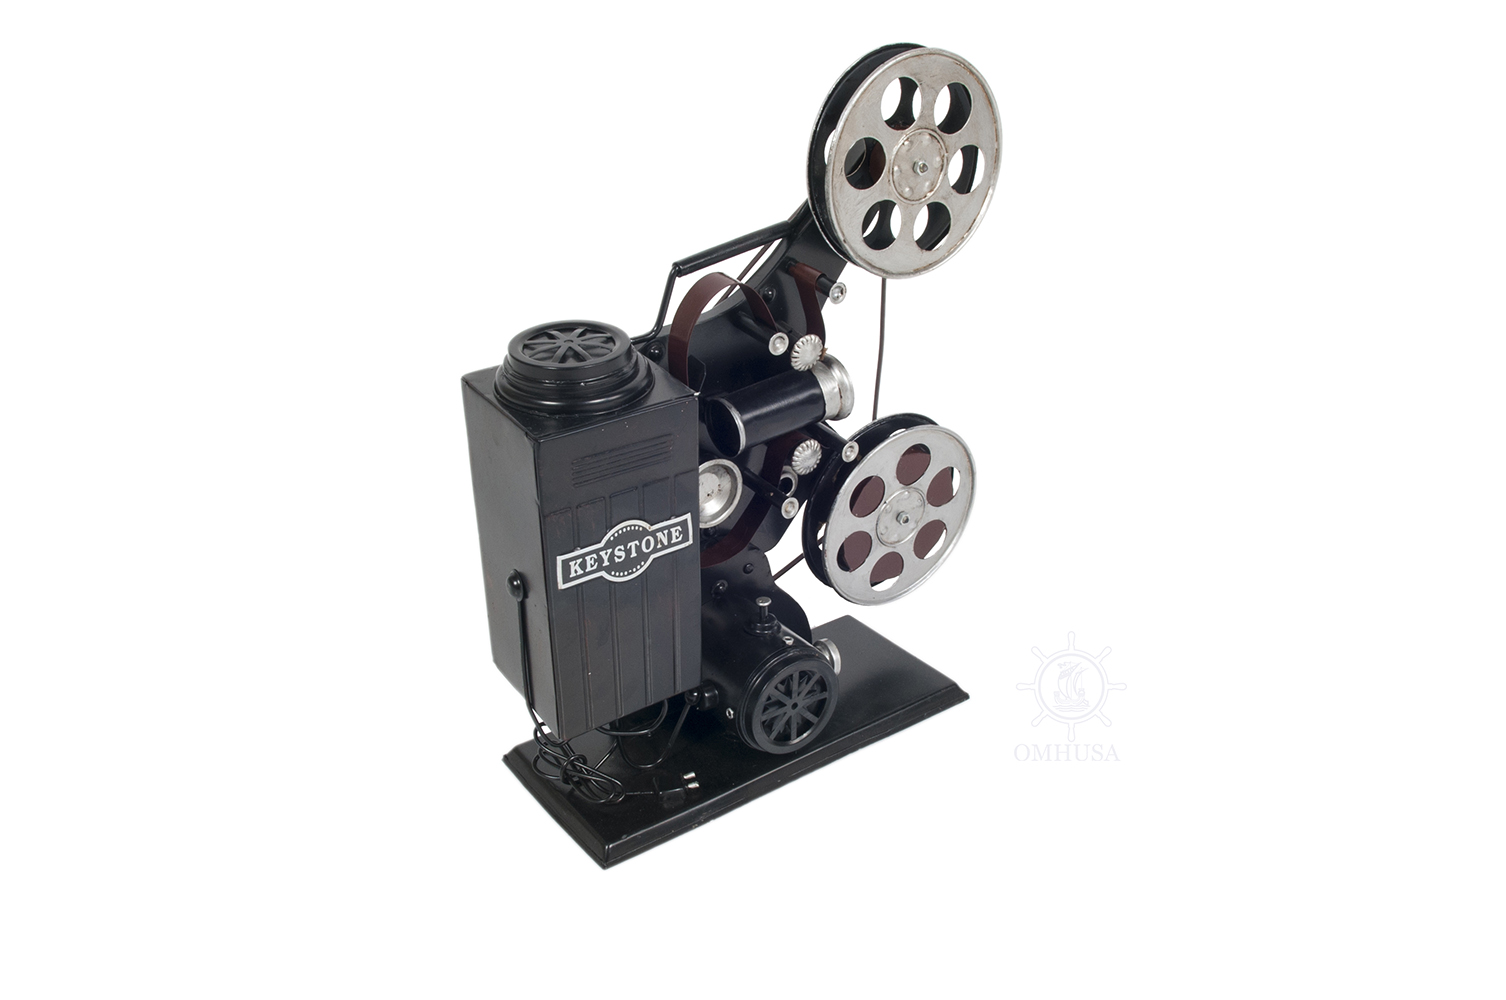 AJ105 1930s Keystone 8mm Film Projector Model R-8 Display-Only aj105-1930s-keystone-8mm-film-projector-model-r8-displayonly-l01.jpg